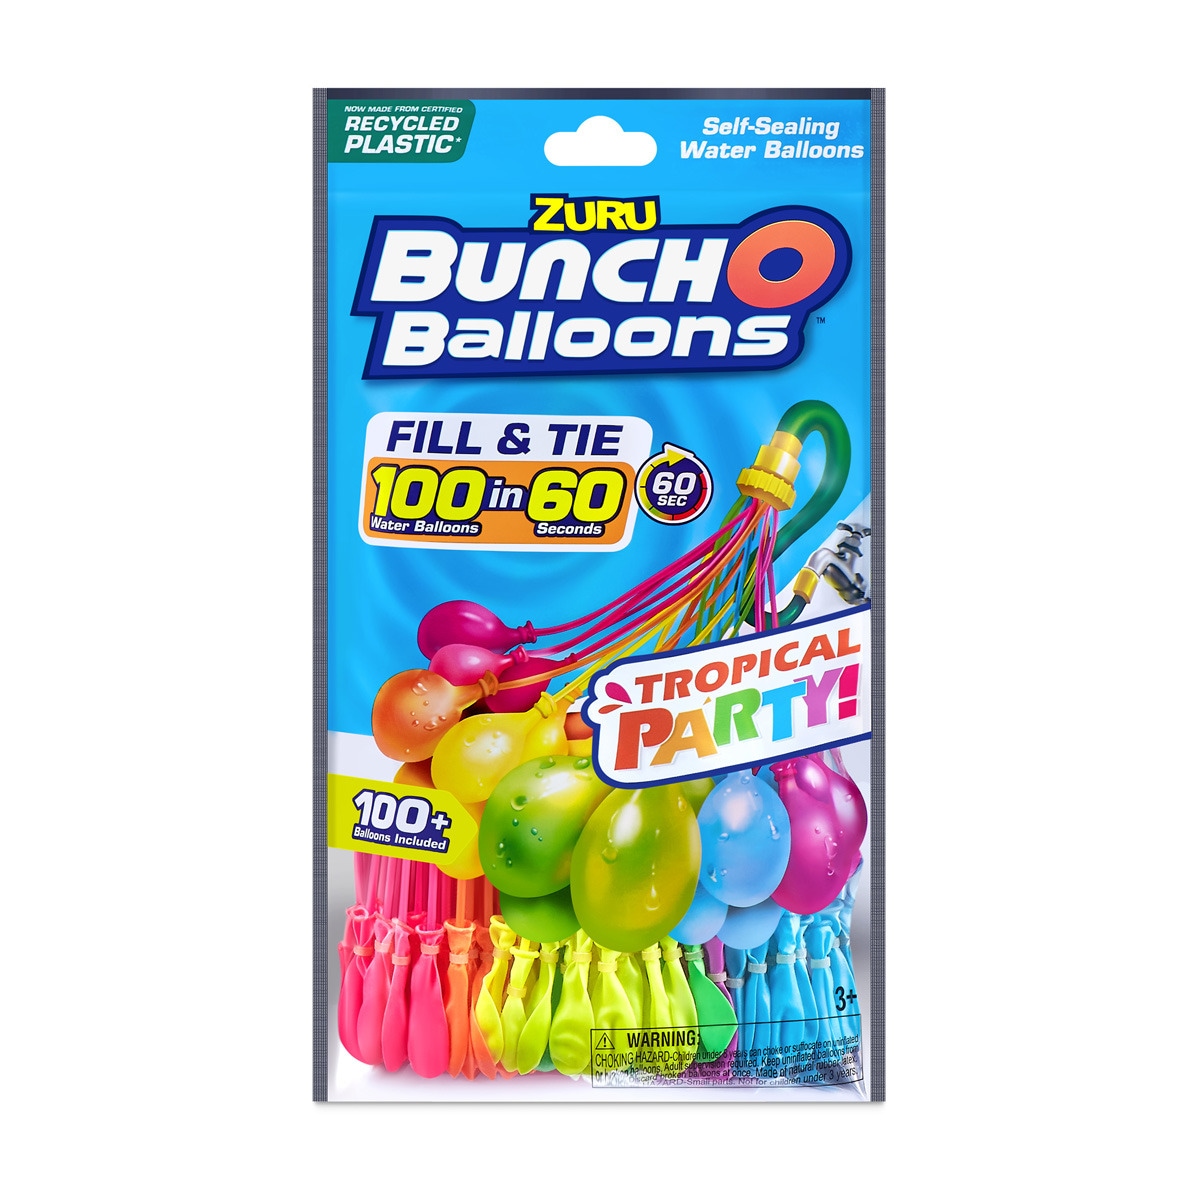 BUNCHOBALLOONS - Pack Neón 100 Buncho Balloons Carga Rápìda Auto-sellante En 60 Segundos